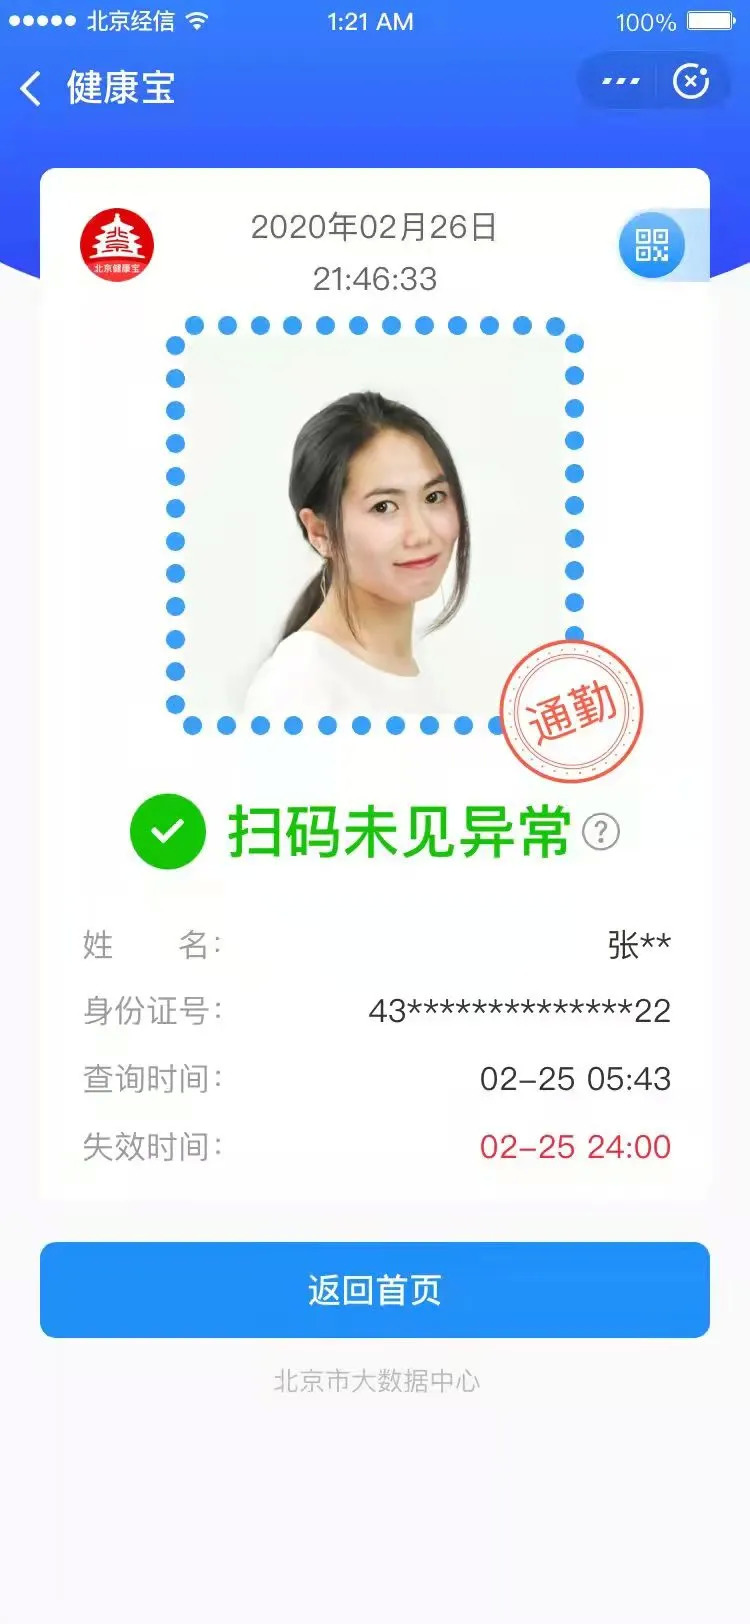 北京健康宝再升级环京地区人员通勤绿码标识方便通行